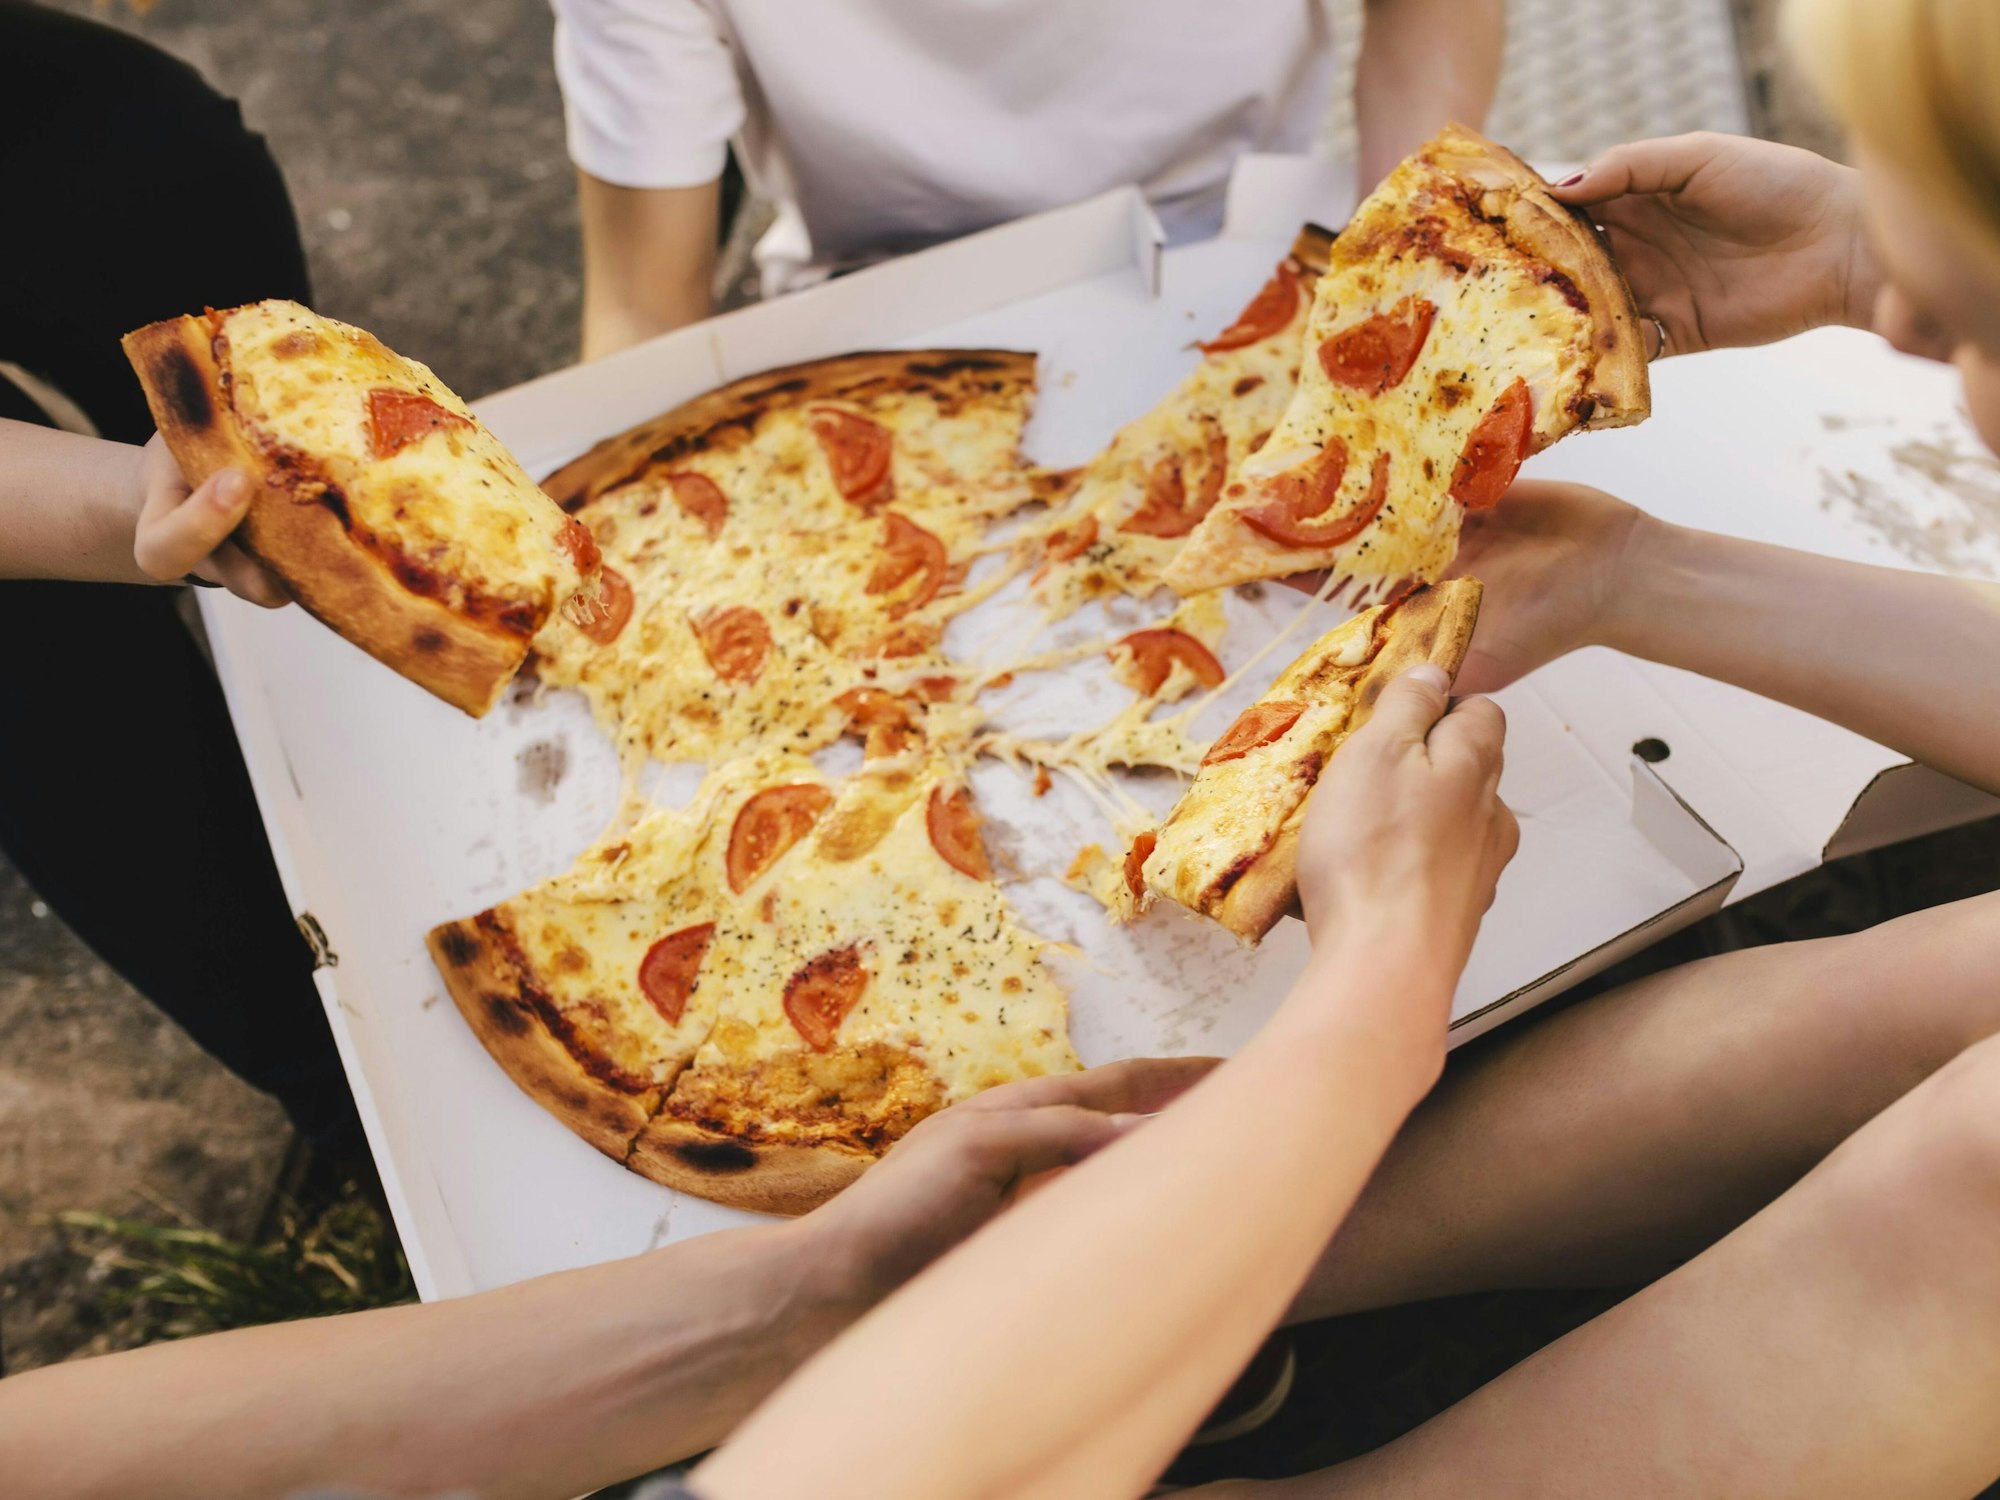 Menschen sitzen auf einer Wiese und teilen eine Pizza.